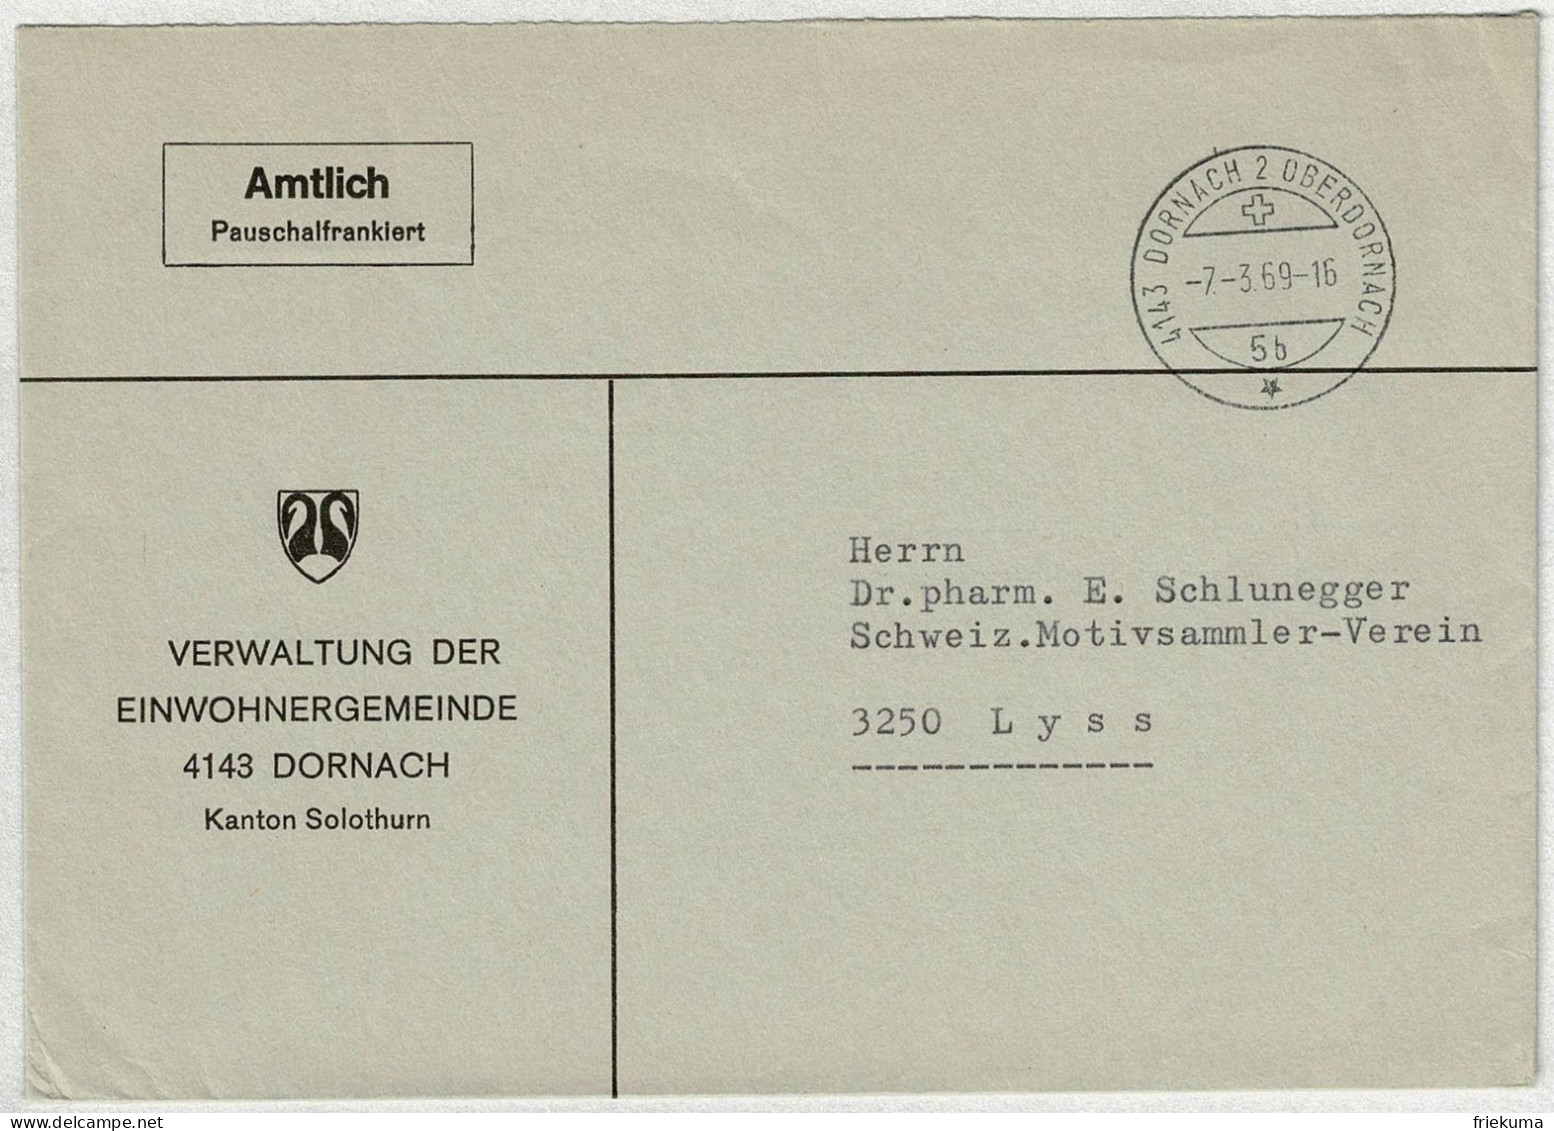 Schweiz 1969, Brief Amtlich Pauschalfrankiert Dornach - Lyss - Postmark Collection